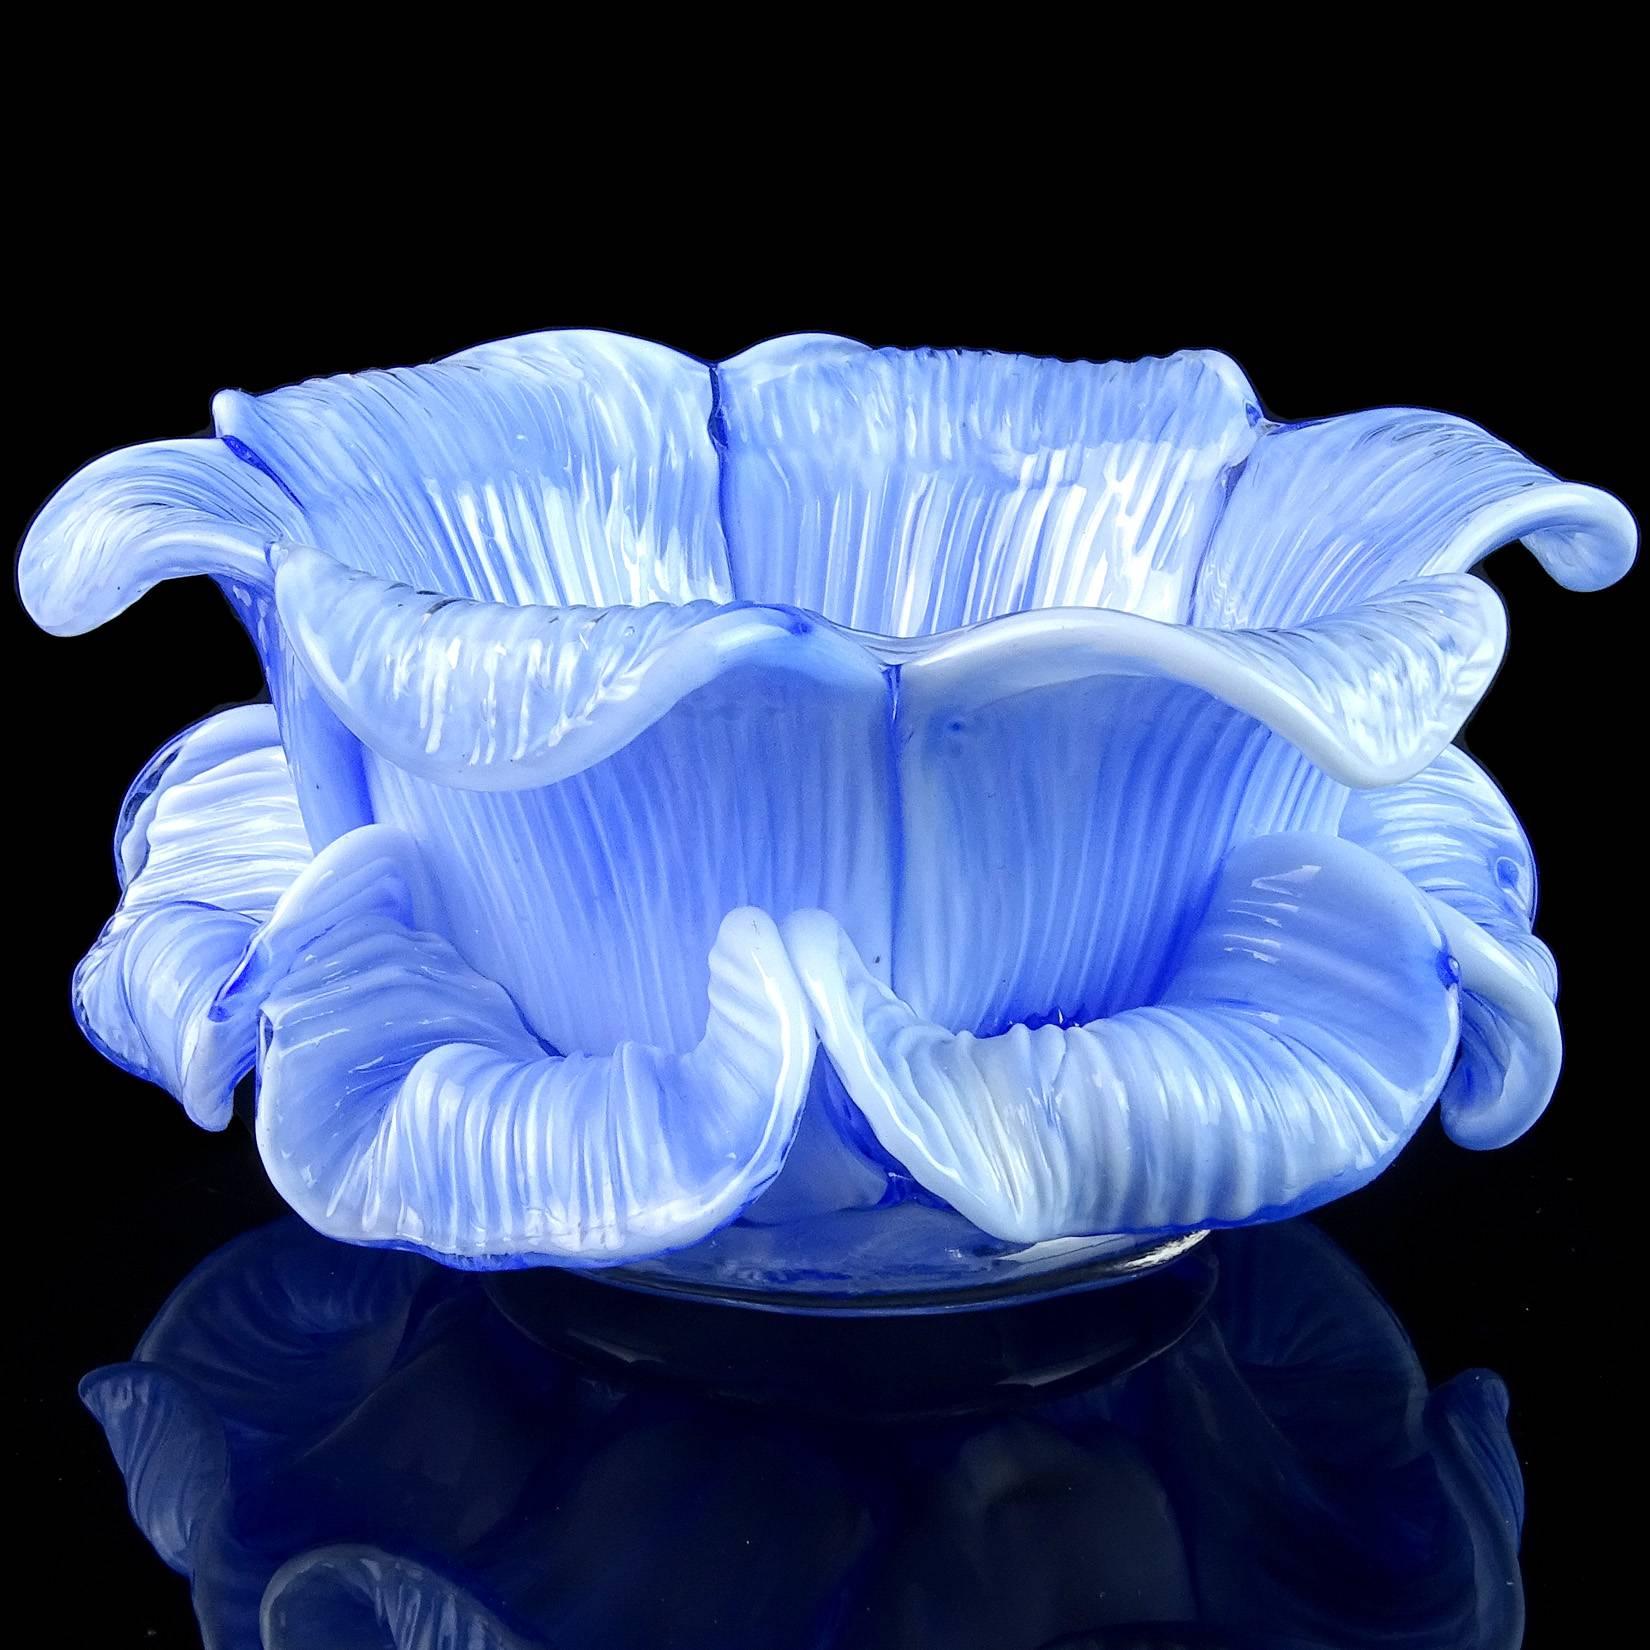 Mid-Century Modern Murano Blue White Mottled Petal Italian Art Glass Flower Bowls Candleholders